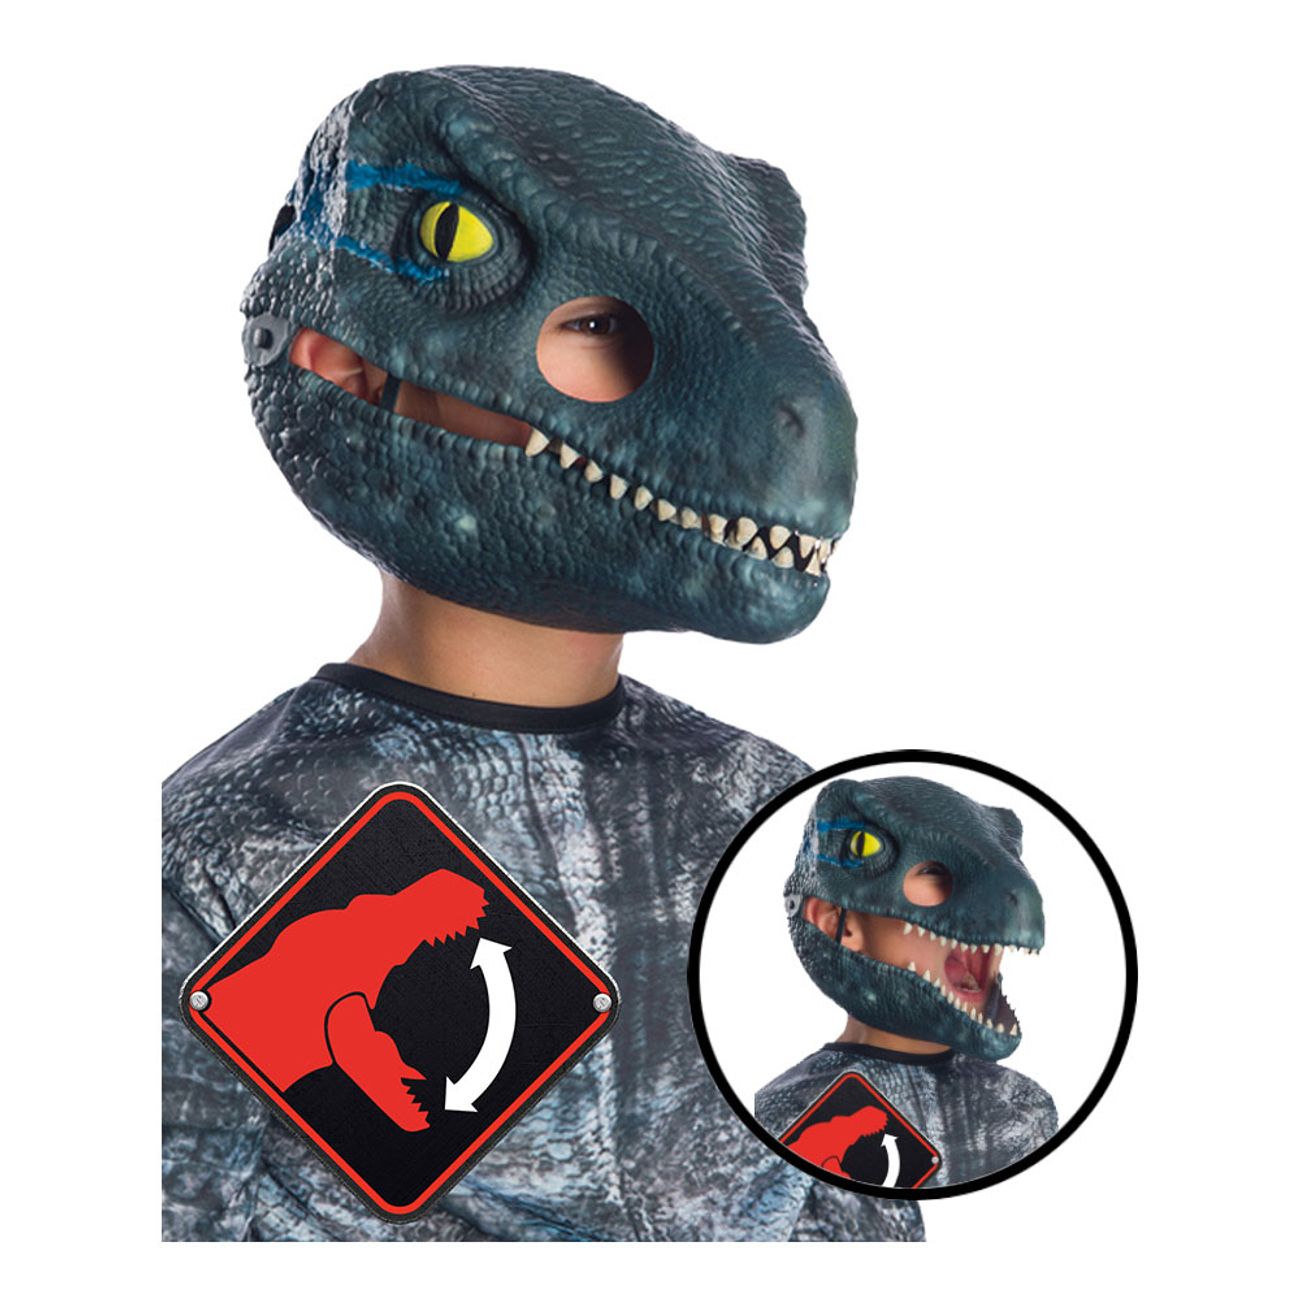 velociraptor-mask-for-barn-med-rorlig-mun-1